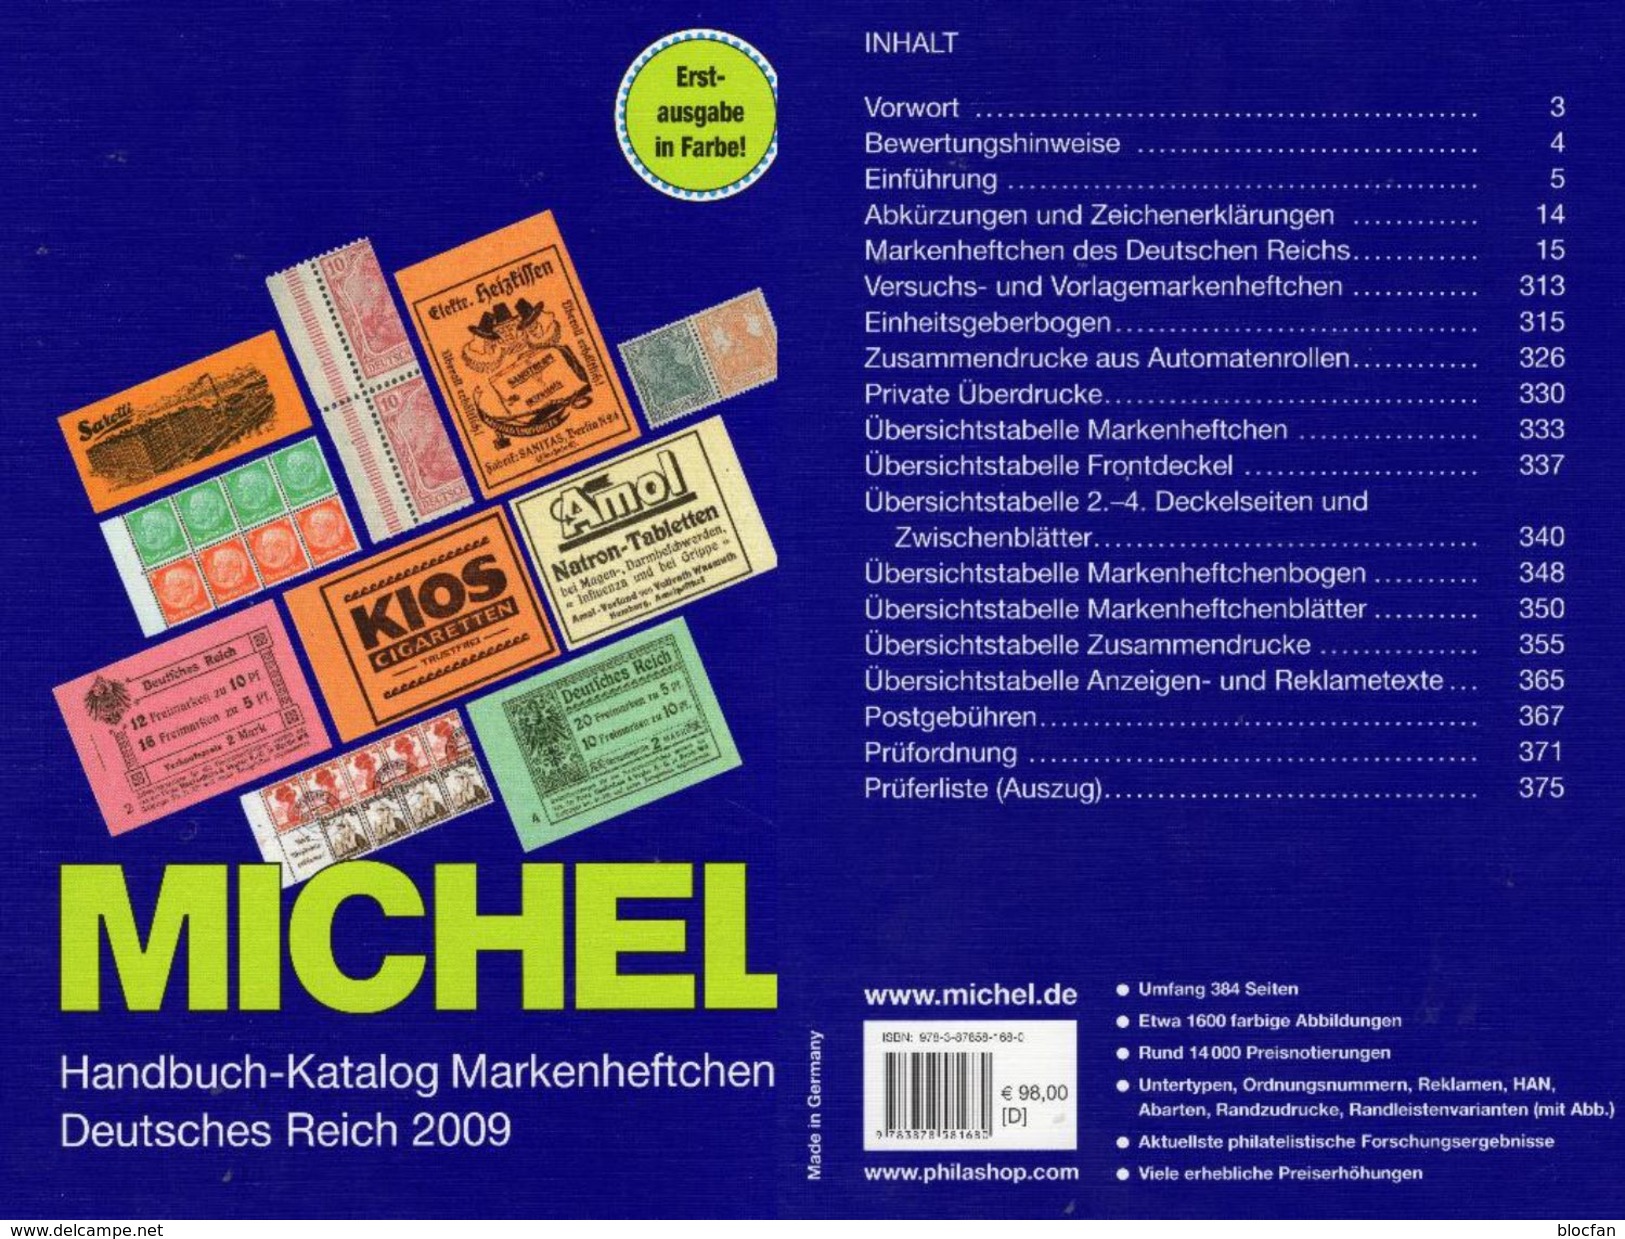 Deutsche Reich Markenheft MlCHEL Handbuch 2009 New 98€ Handbook With Special Carnets Booklets Catalogue Old Germany - Philatélie